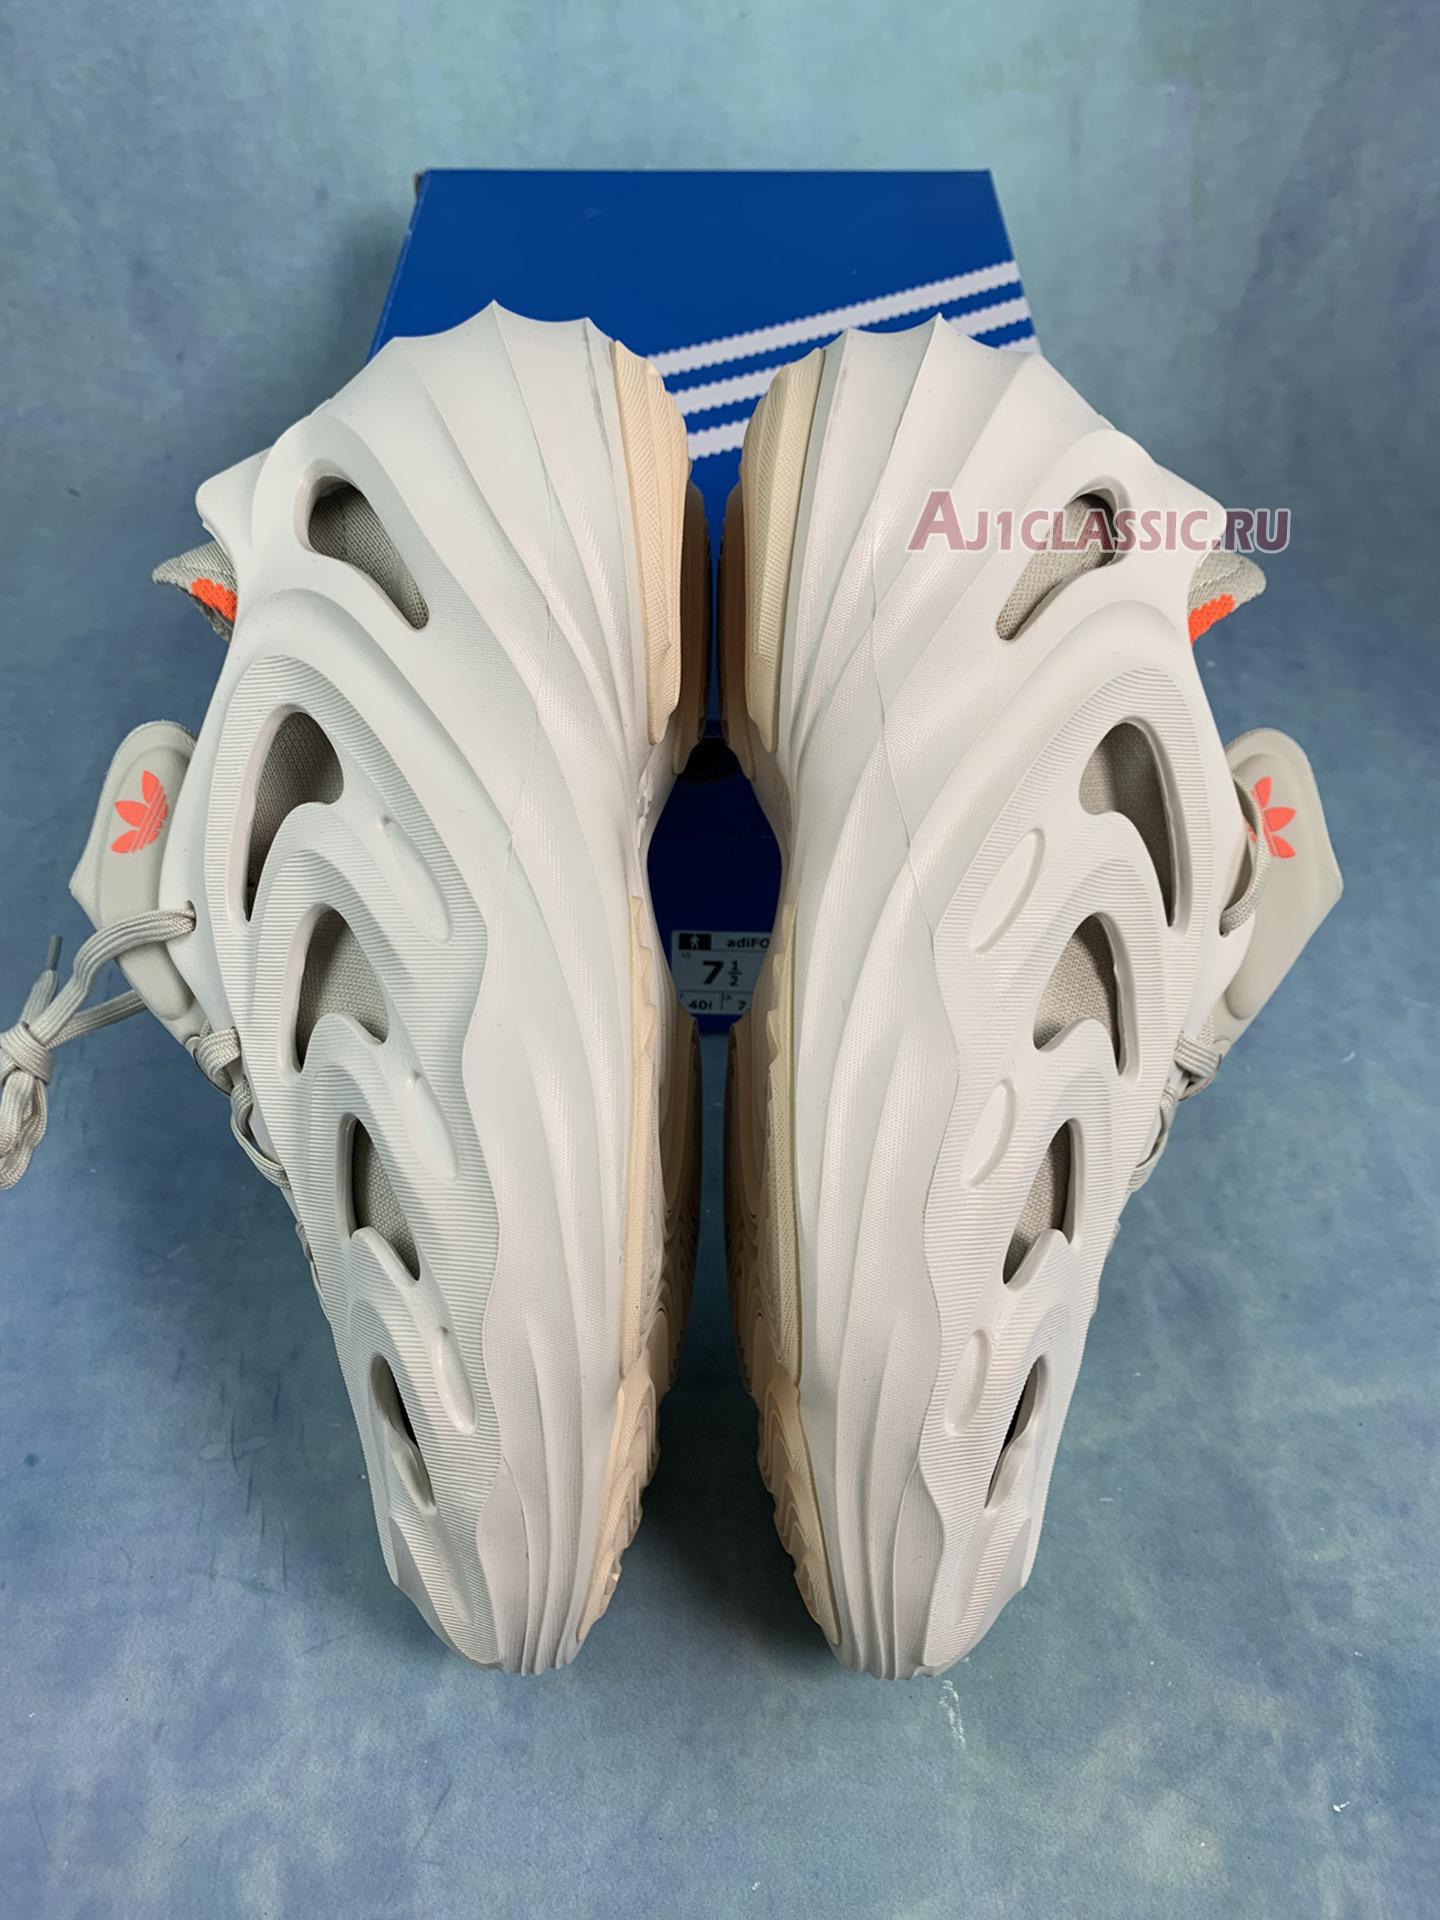 Adidas adiFOM Q "Off-White" GY4455